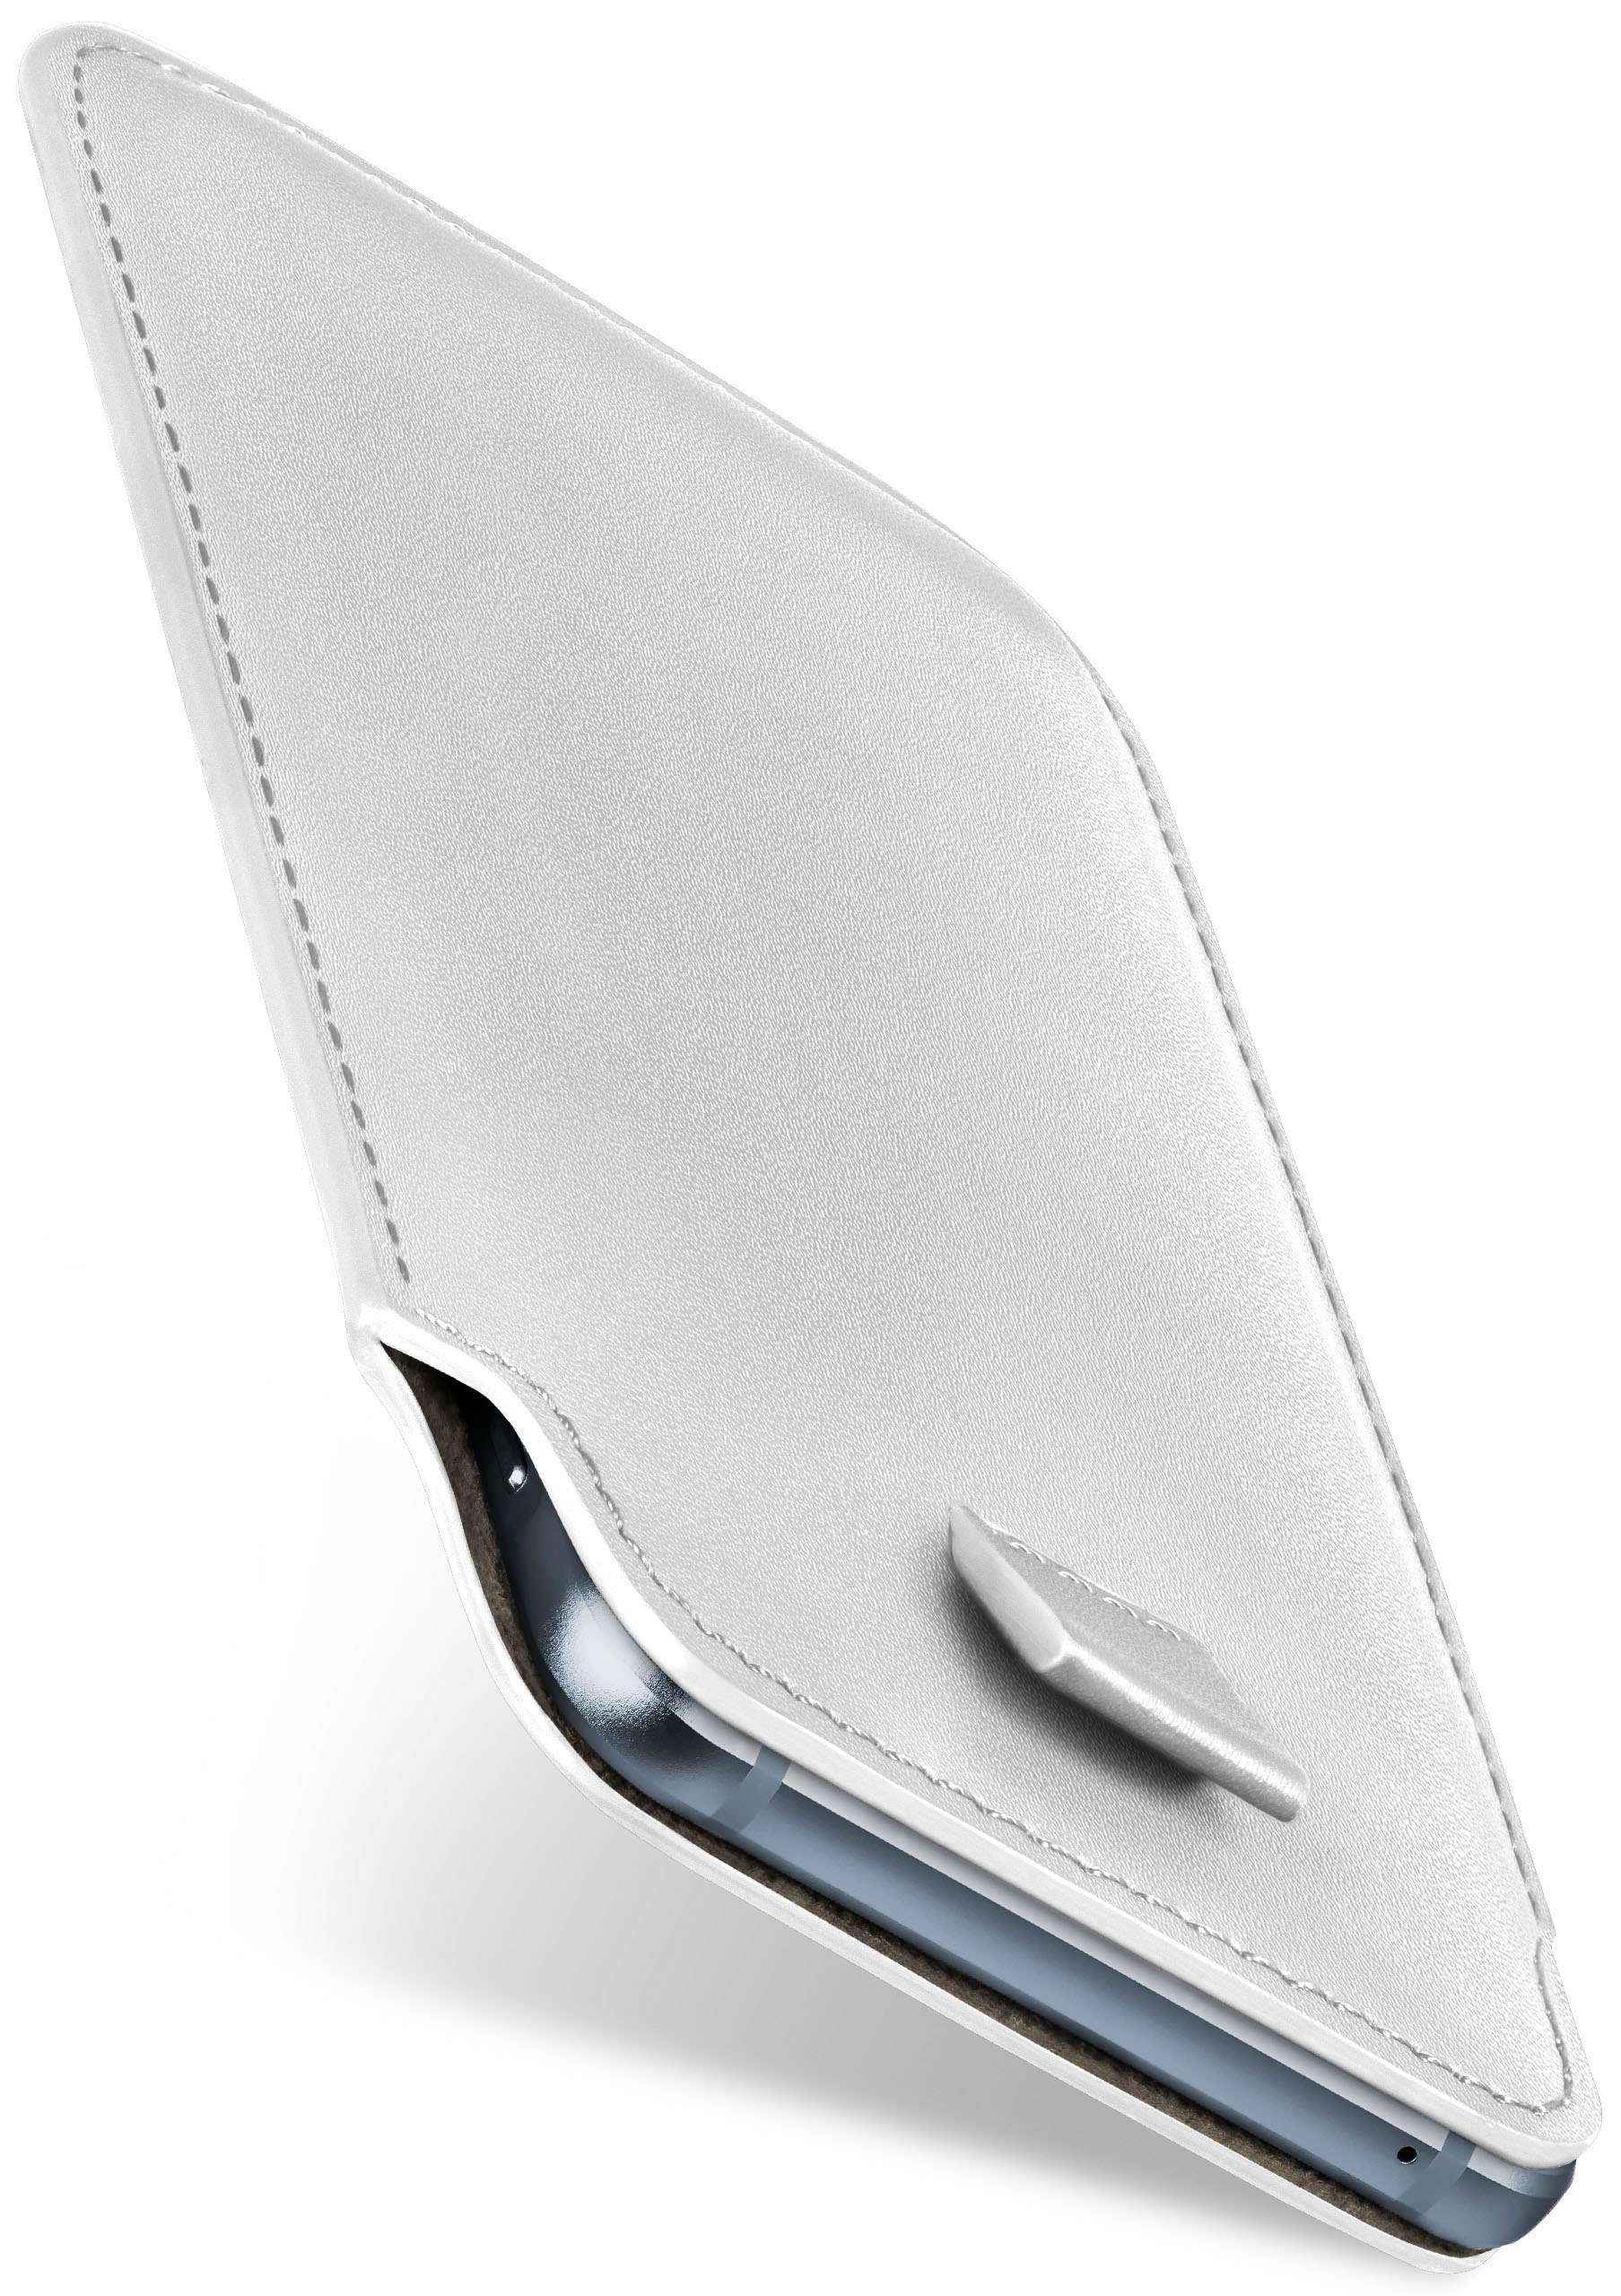 Cover, Slide MOEX Sony, Shiny-White Full 10 Xperia Case, II,